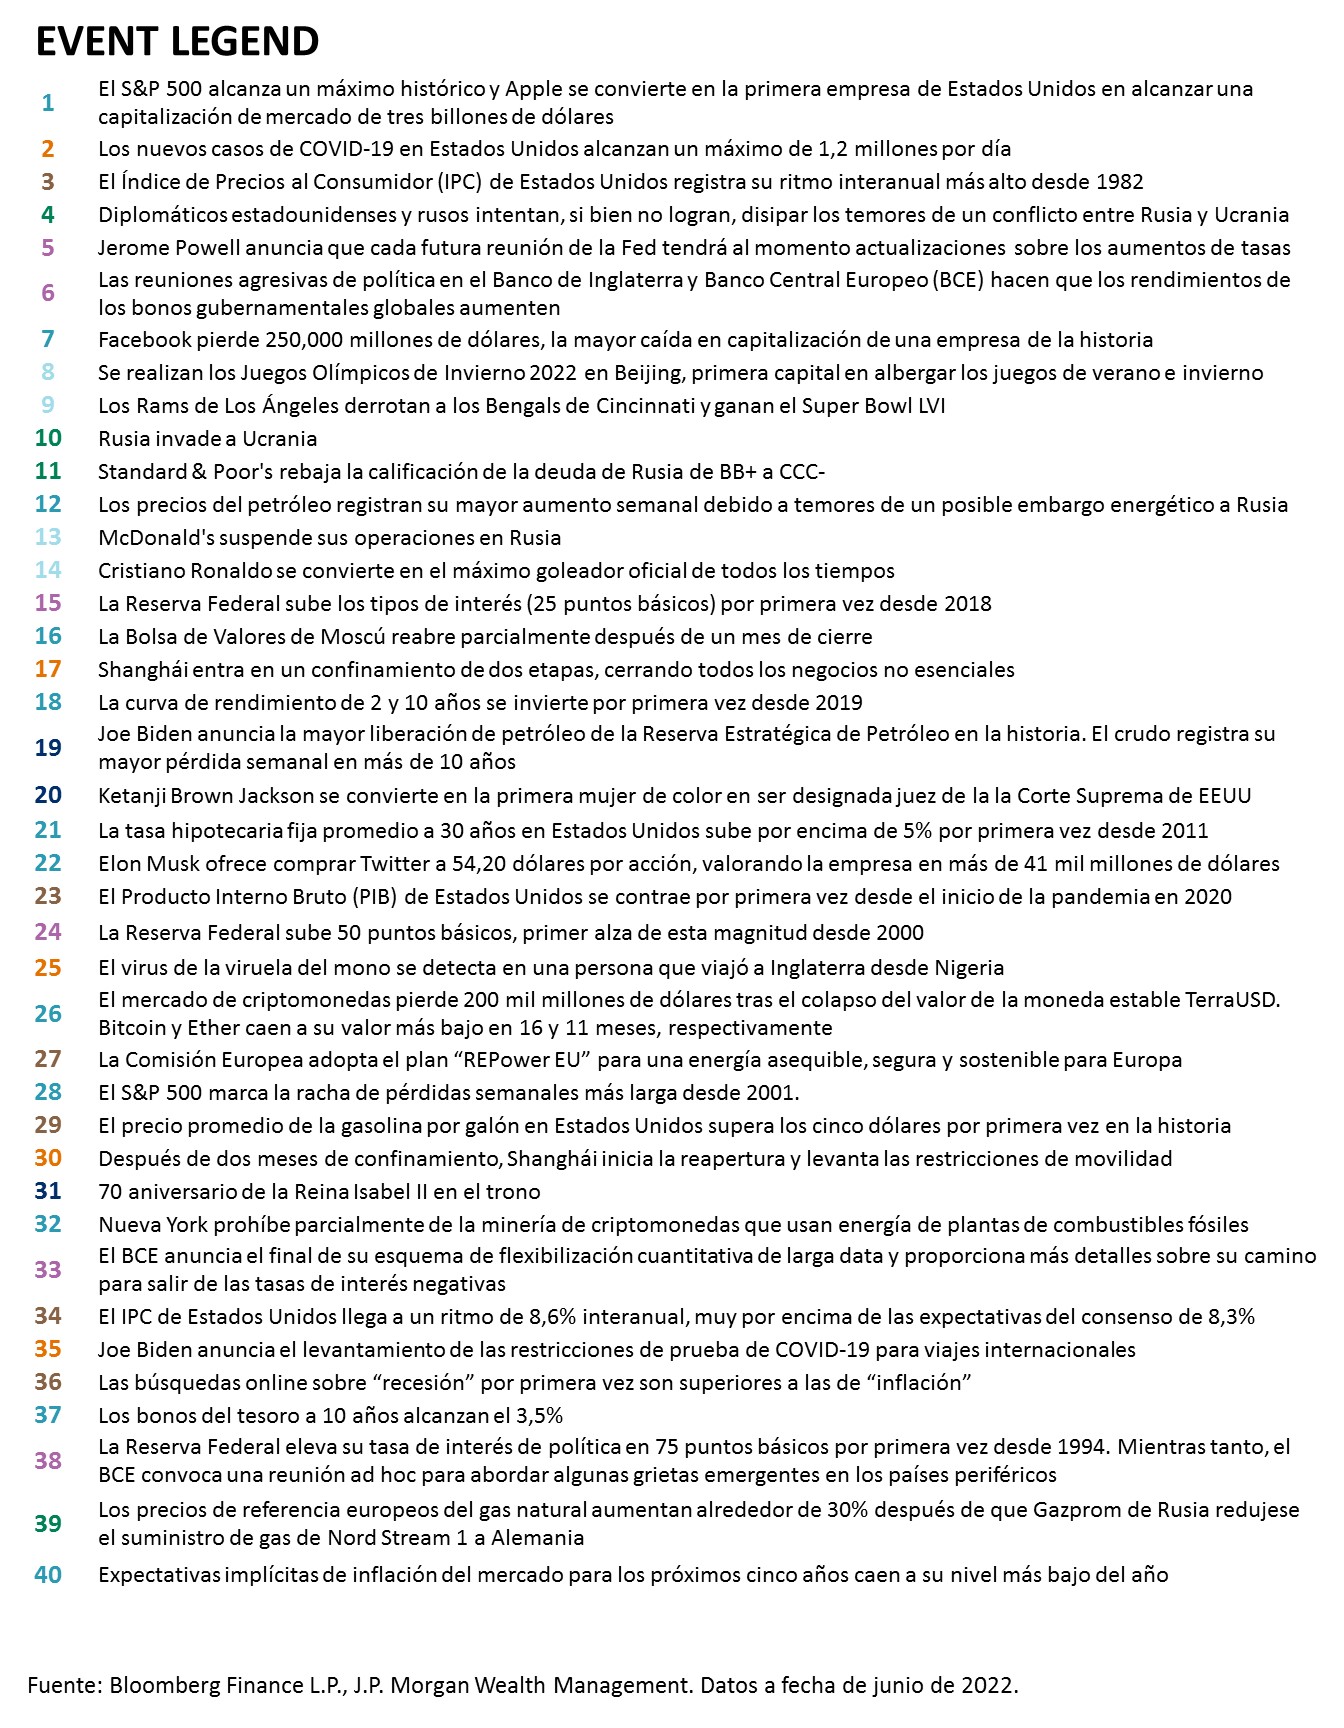 Esta tabla muestra los 40 eventos clave que ocurrieron entre enero y junio de 2022.